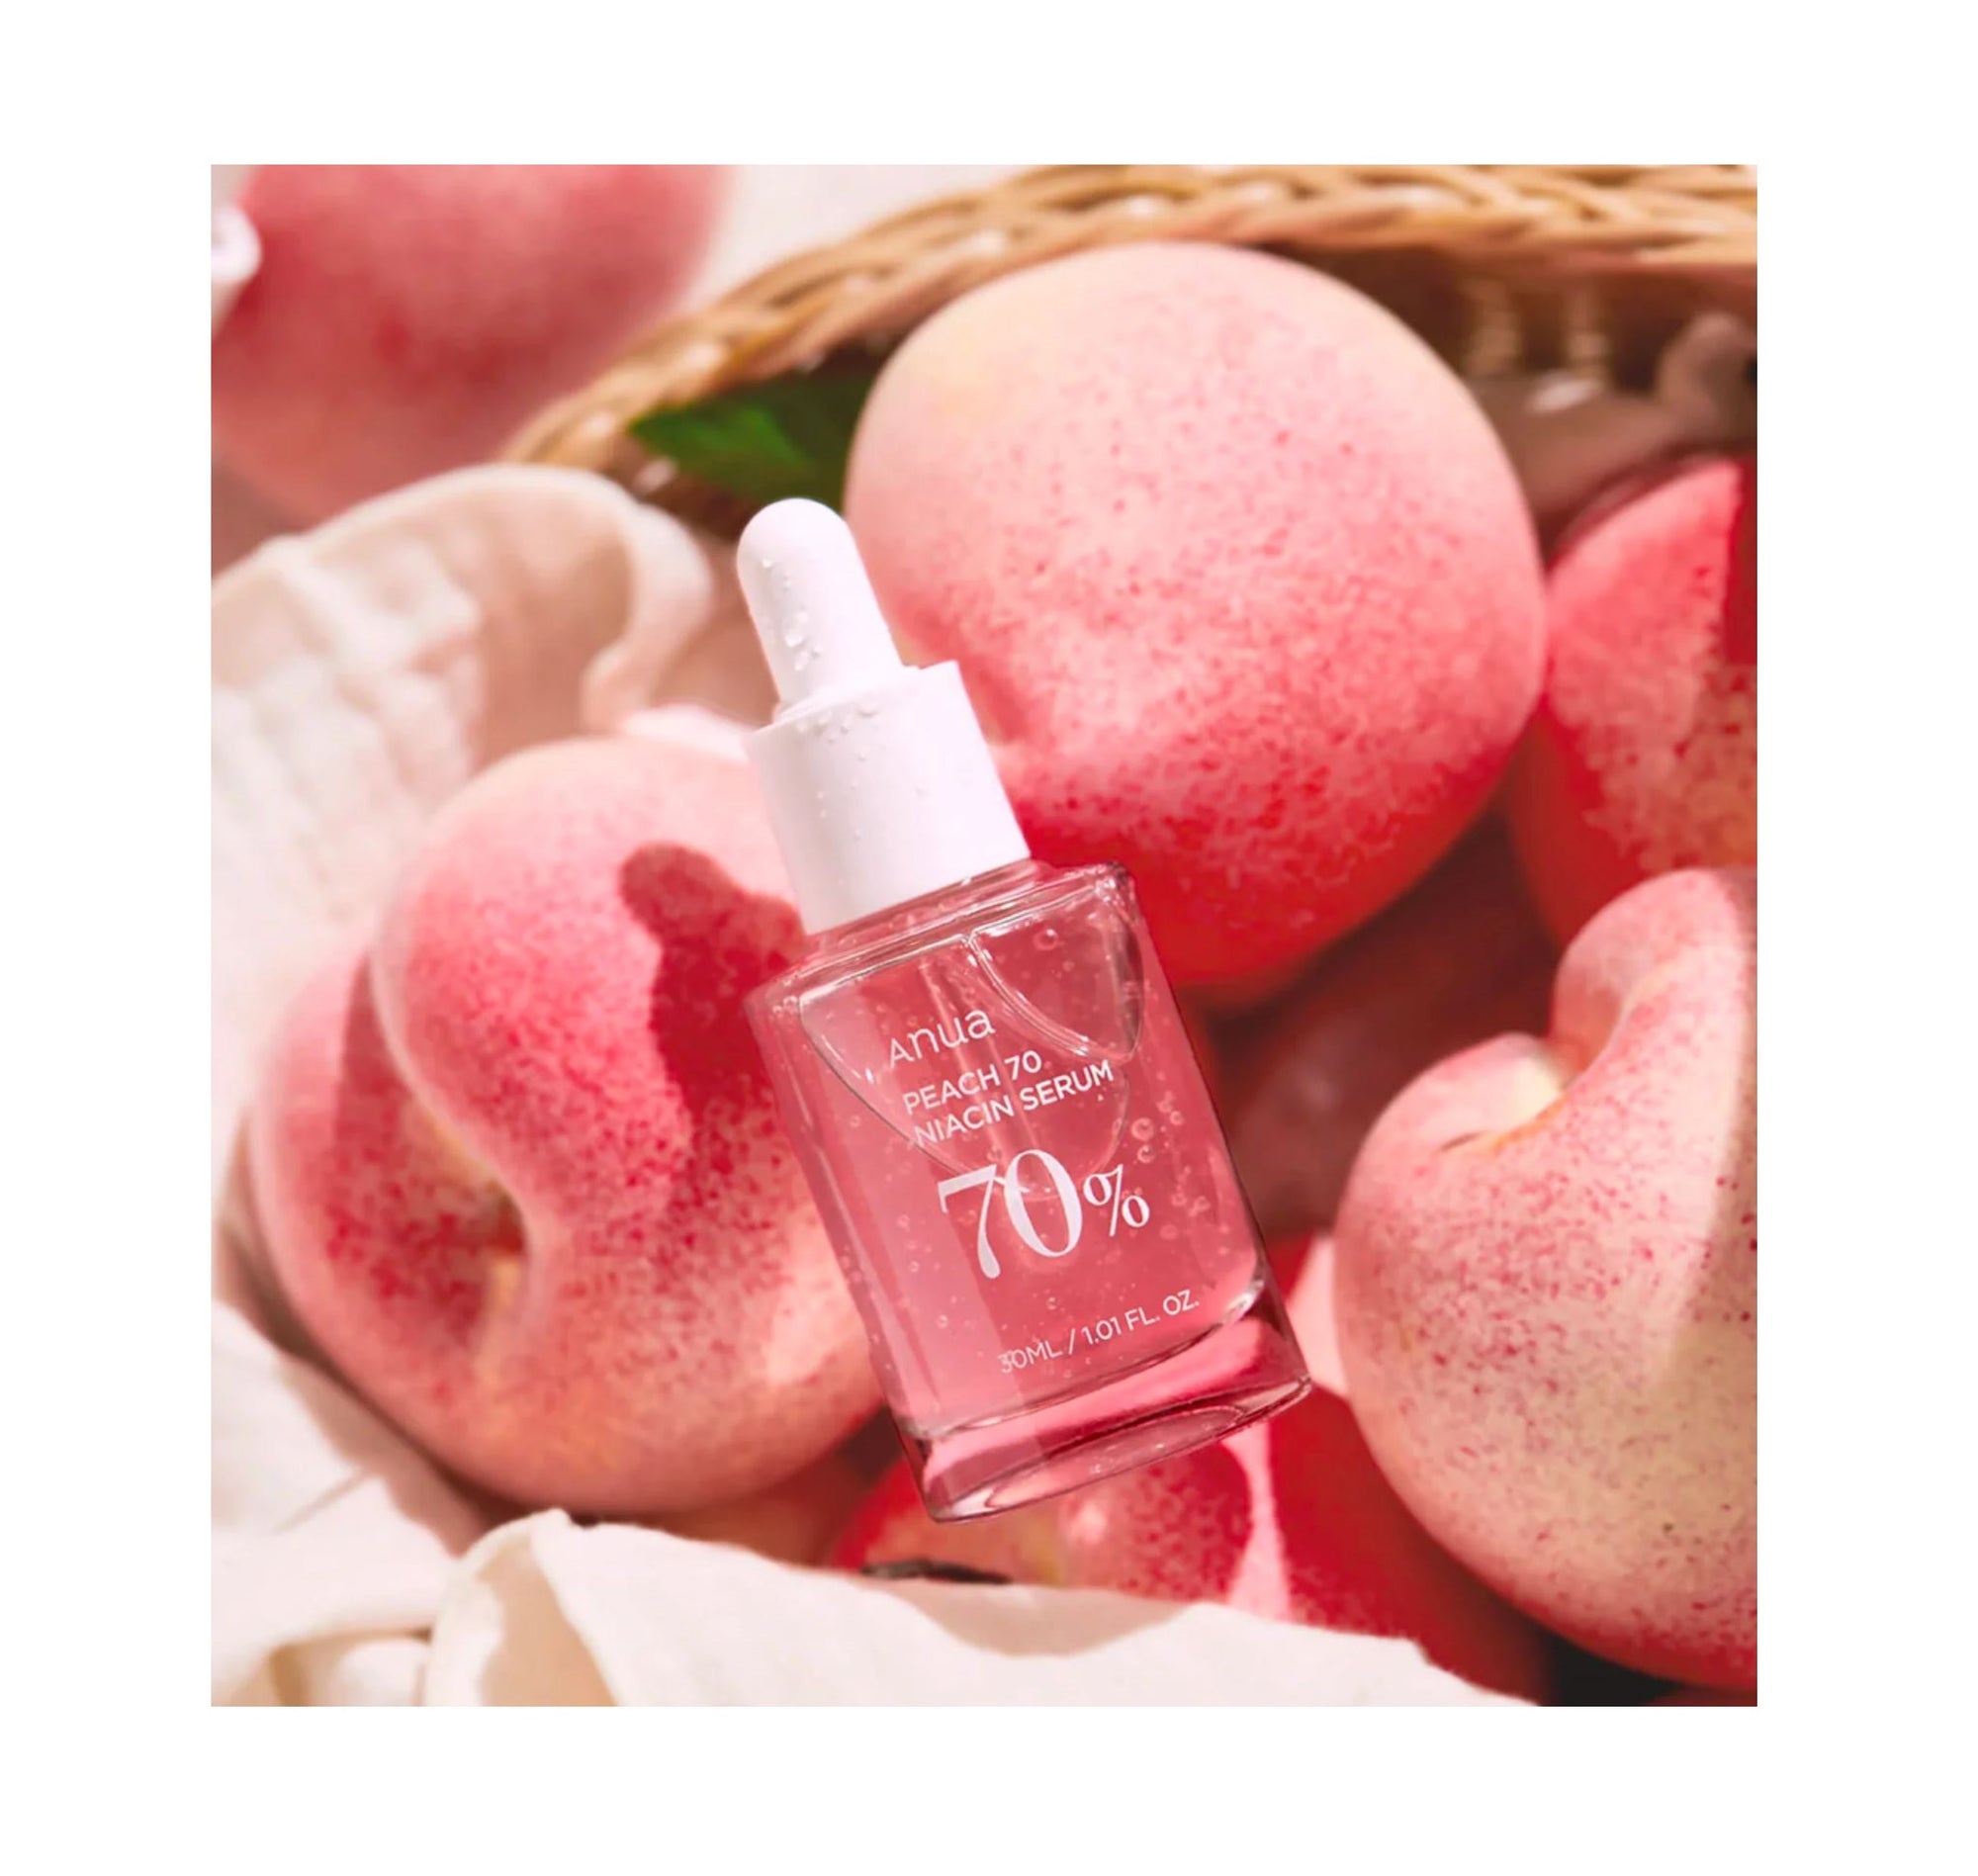 Peach 70 Niacin Serum - 30ml